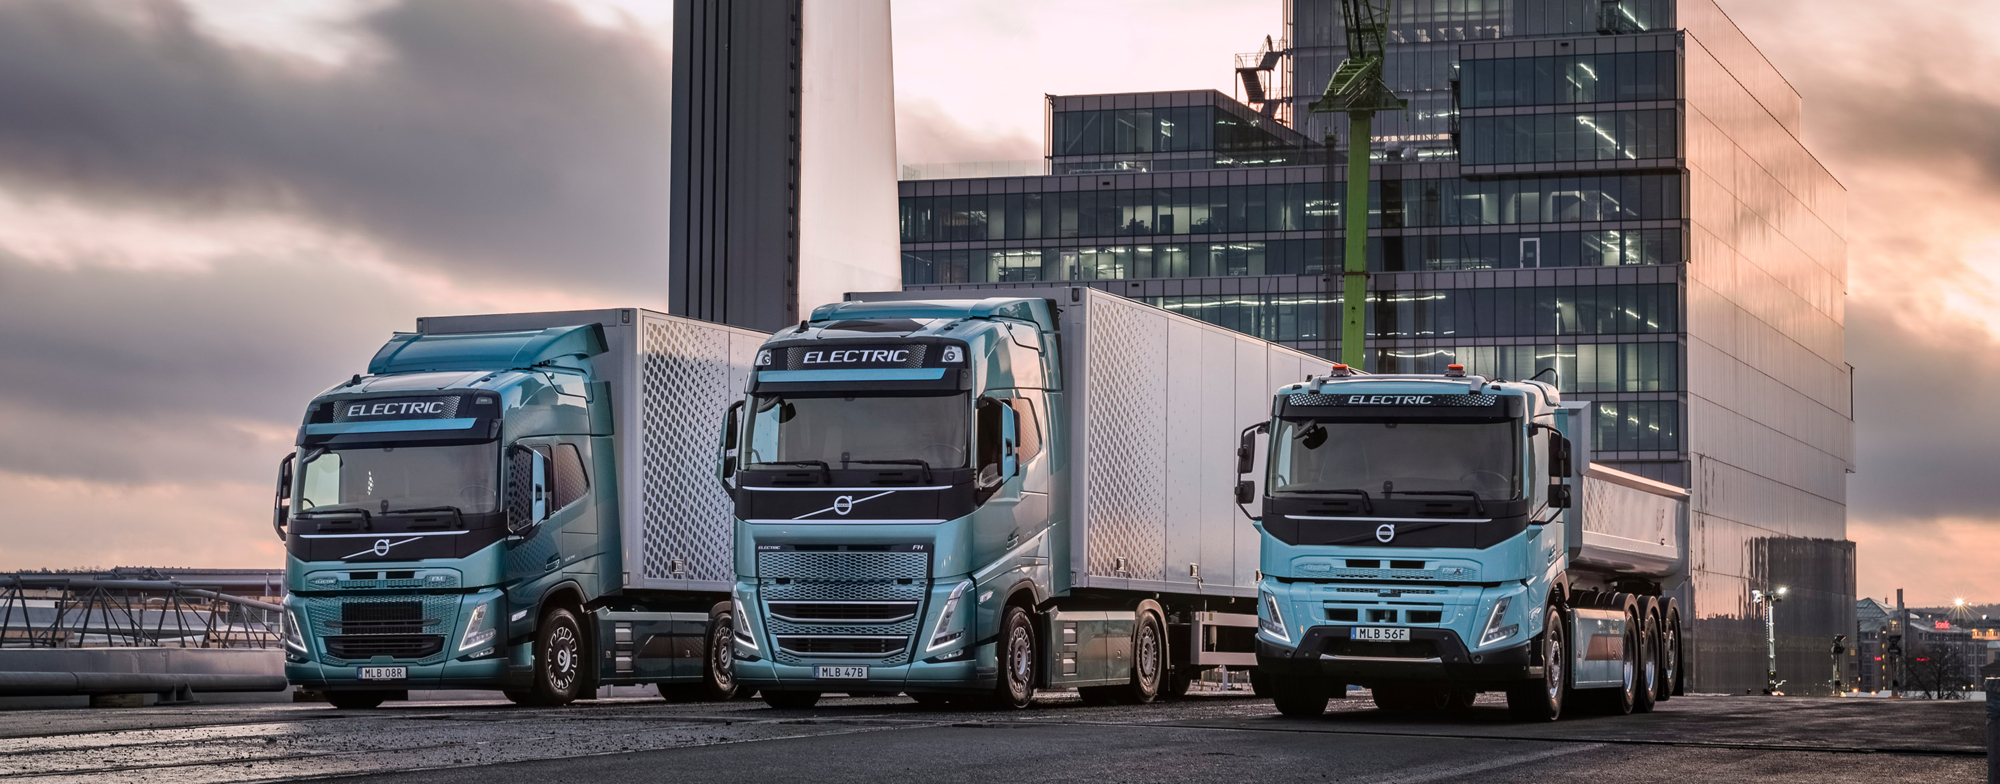 Bluekens-truck-en-bus-maak-kennis-met-onze-elektrische-vrachtwagens-voor-zware-ladingen